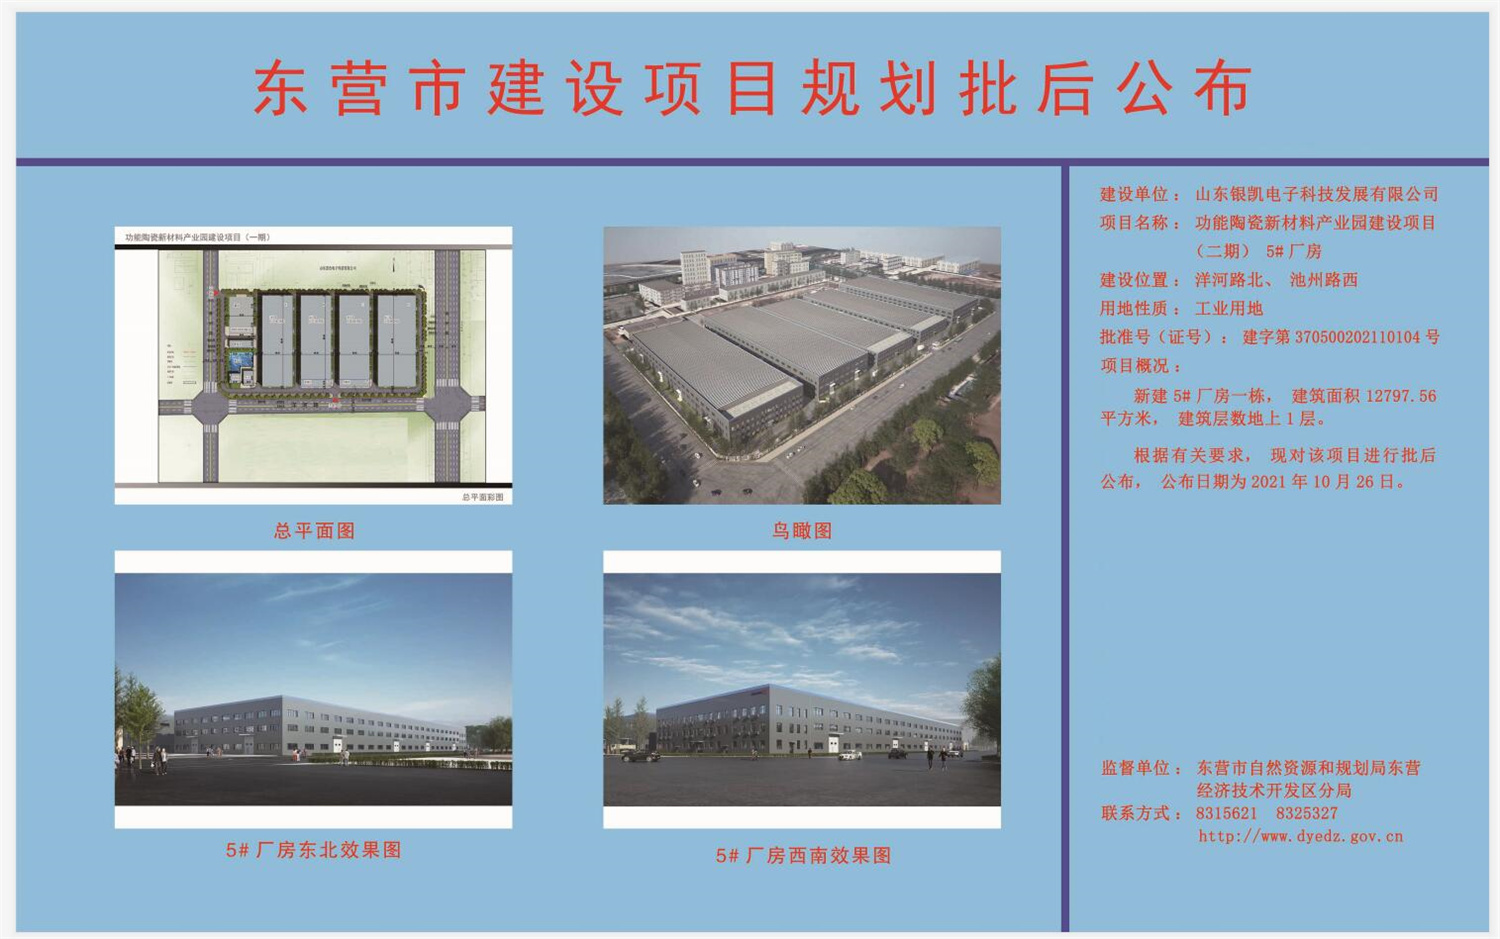 山东银凯电子科技发展有限公司功能陶瓷新材料产业园建设项目（二期）5#厂房.jpg